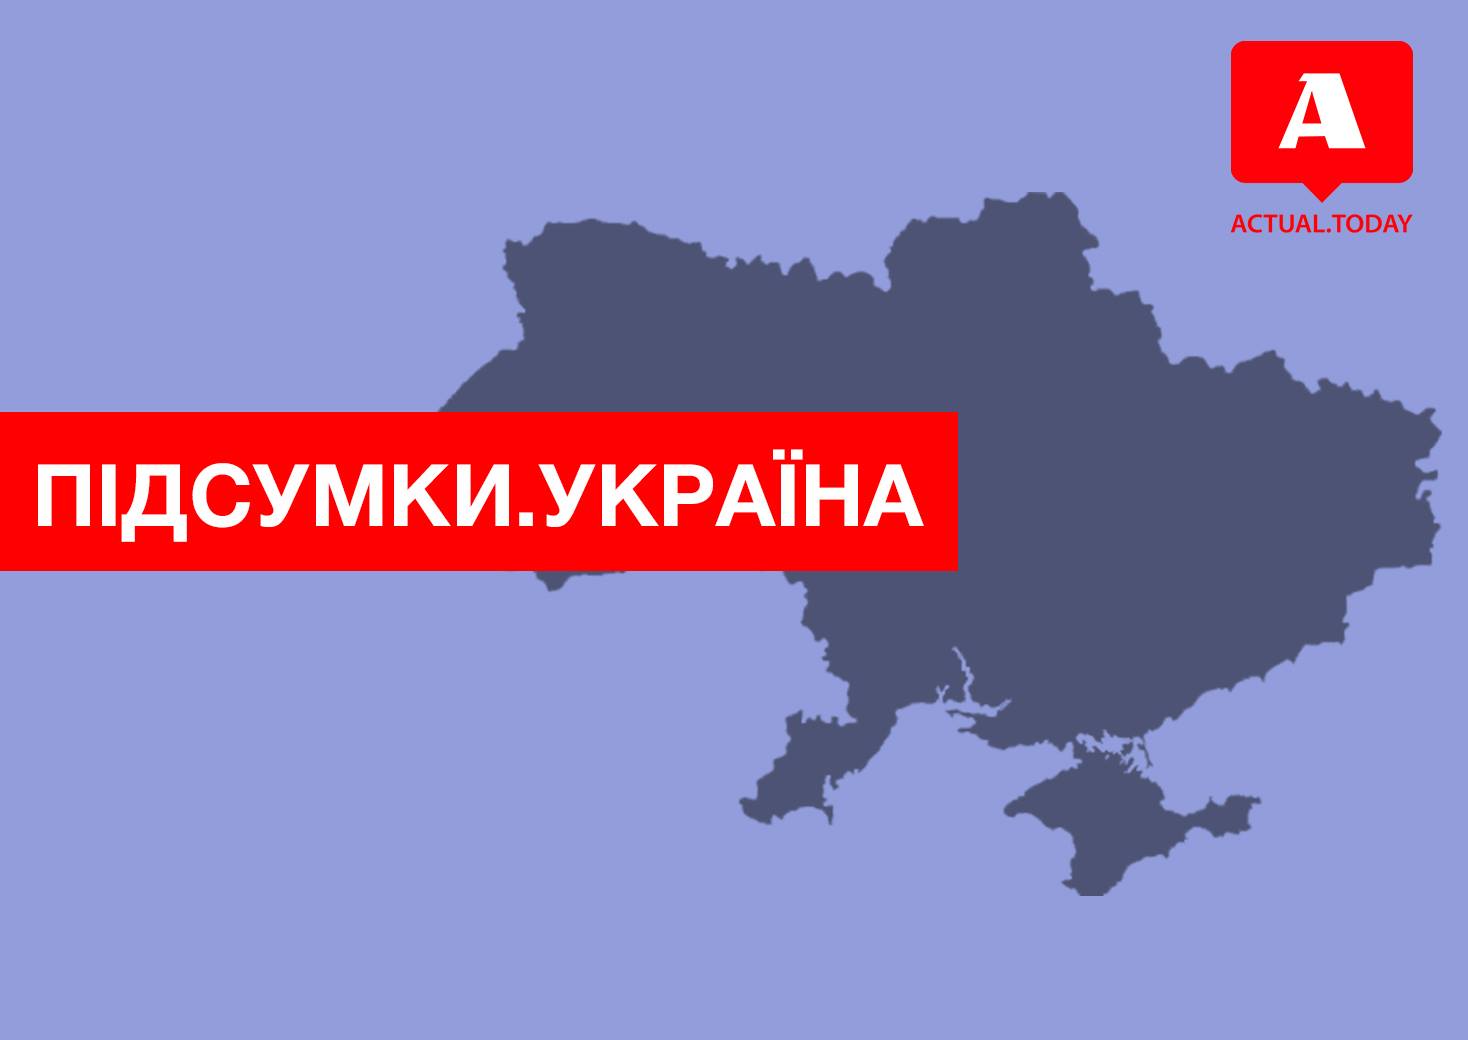 Саакашвили просит гражданство, Гелетей подал рапорт на увольнение, нардепы покидают БПП – главные новости среды